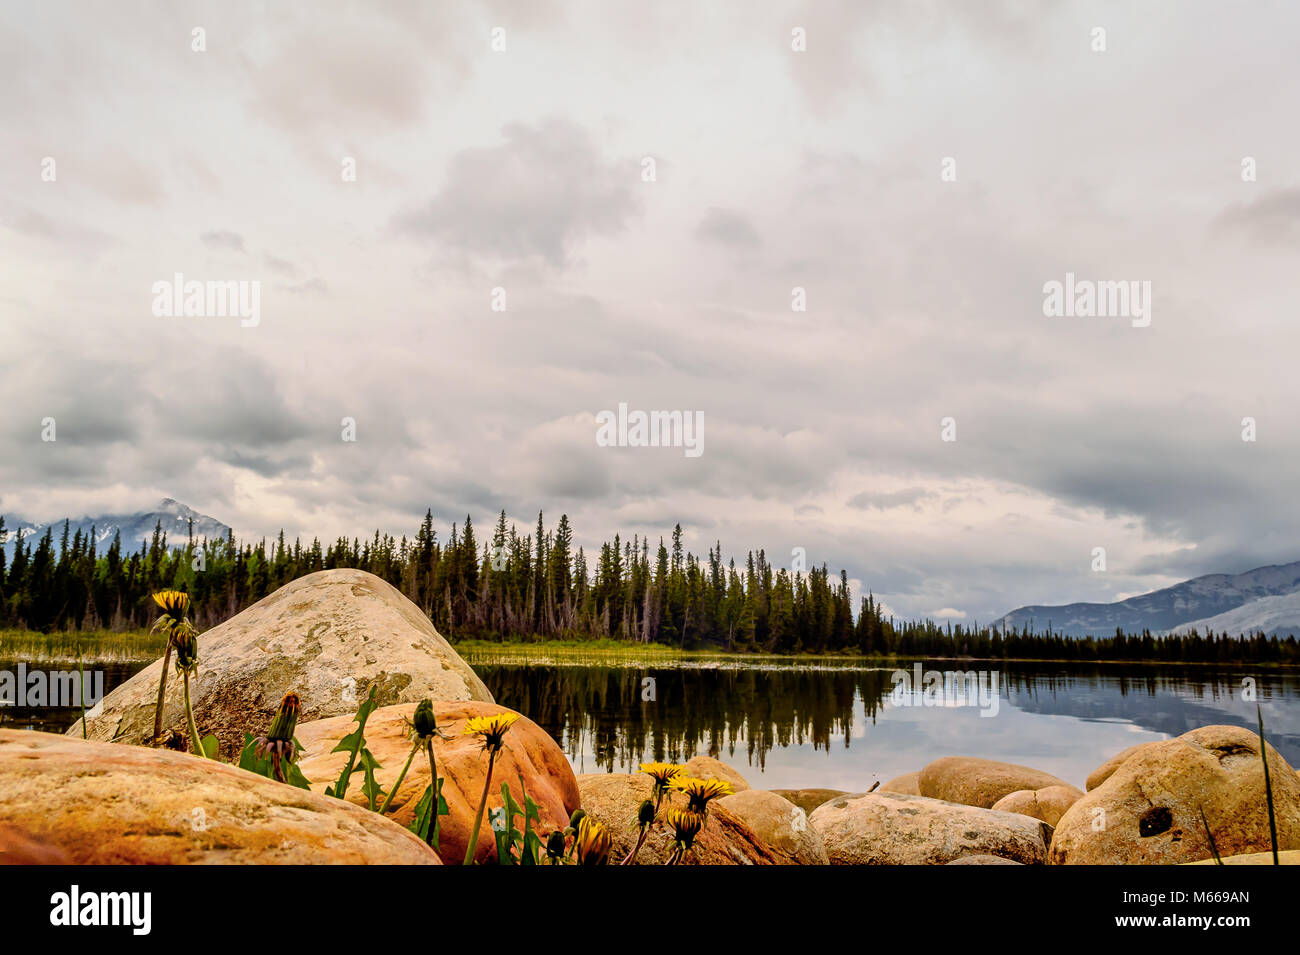 Fiori gialli tra rocce, un lago con la riflessione tra il verde degli abeti e montagne innevate, un Haze di grigio nuvole nel cielo Foto Stock